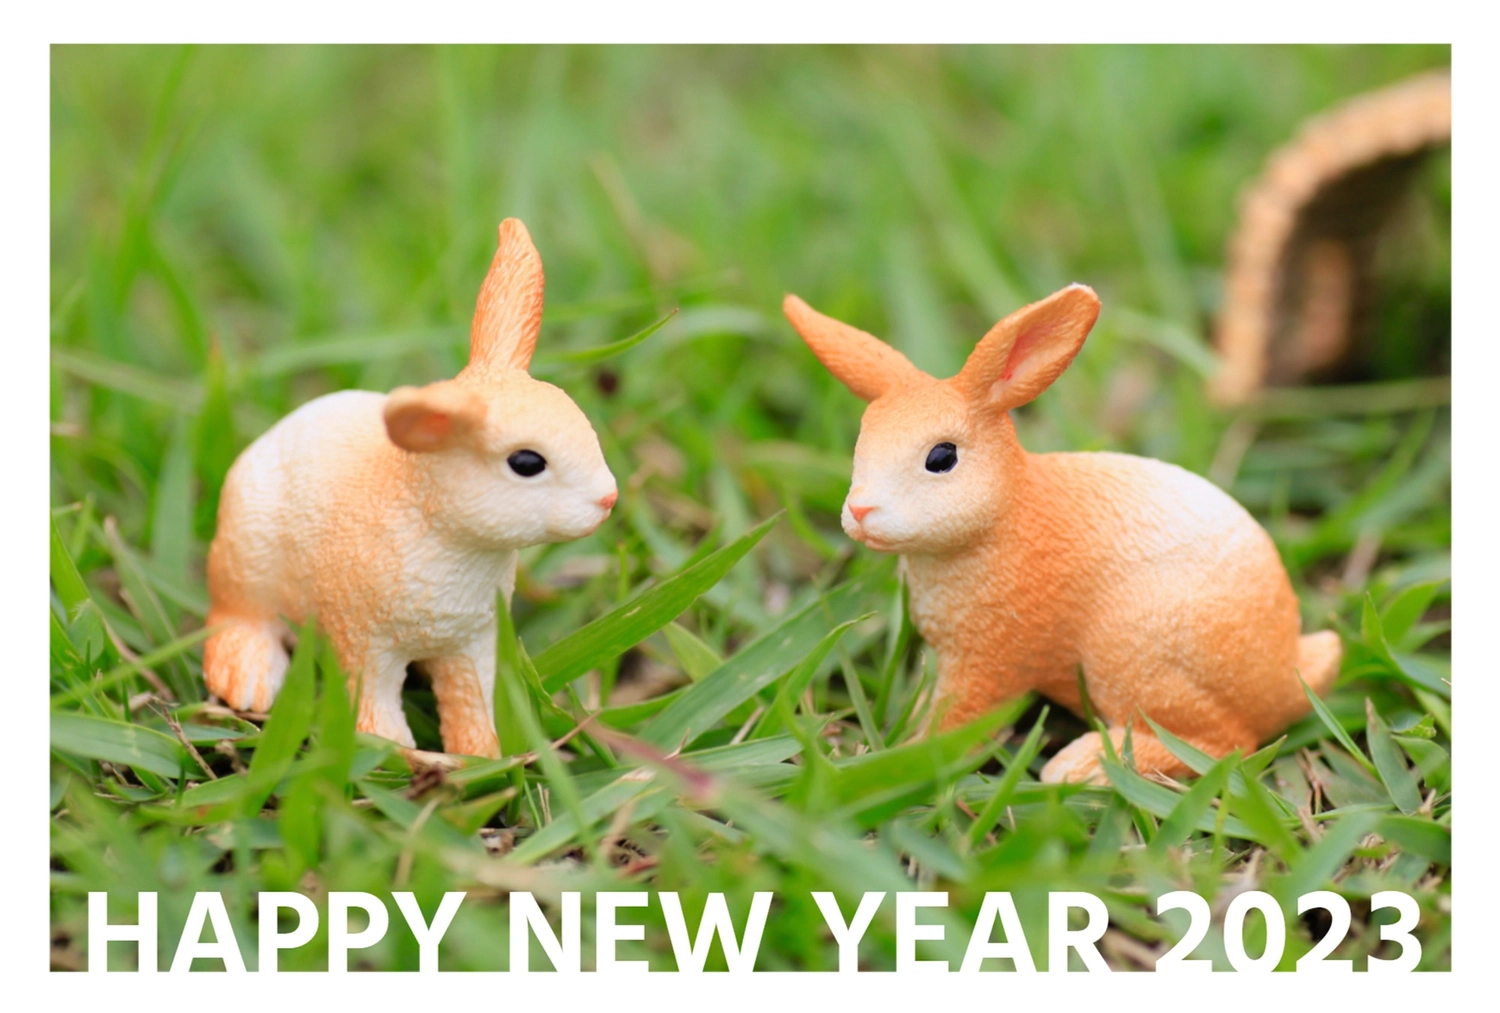 シュライヒ　葉っぱの上にいる2匹のうさぎ　HAPPY NEW YEAR, 年賀状, 屋外, シュライヒフィギュア, 年賀状テンプレート